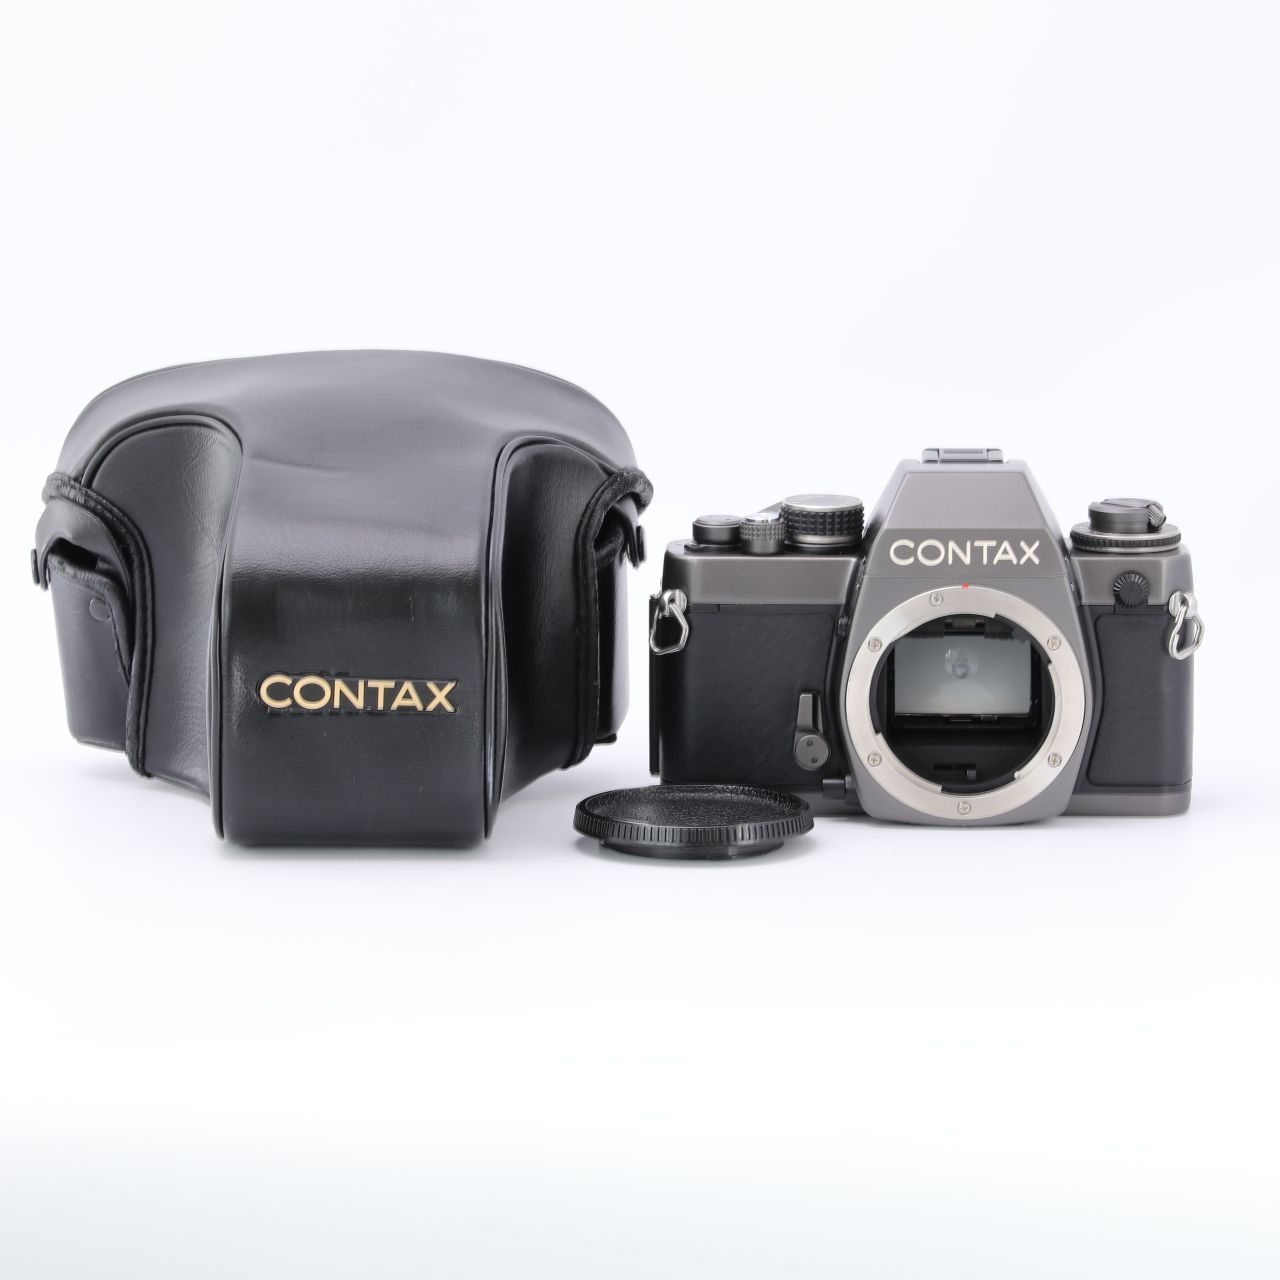 CONTAX コンタックス S2b ボディ フィルム一眼レフカメラ - メルカリ